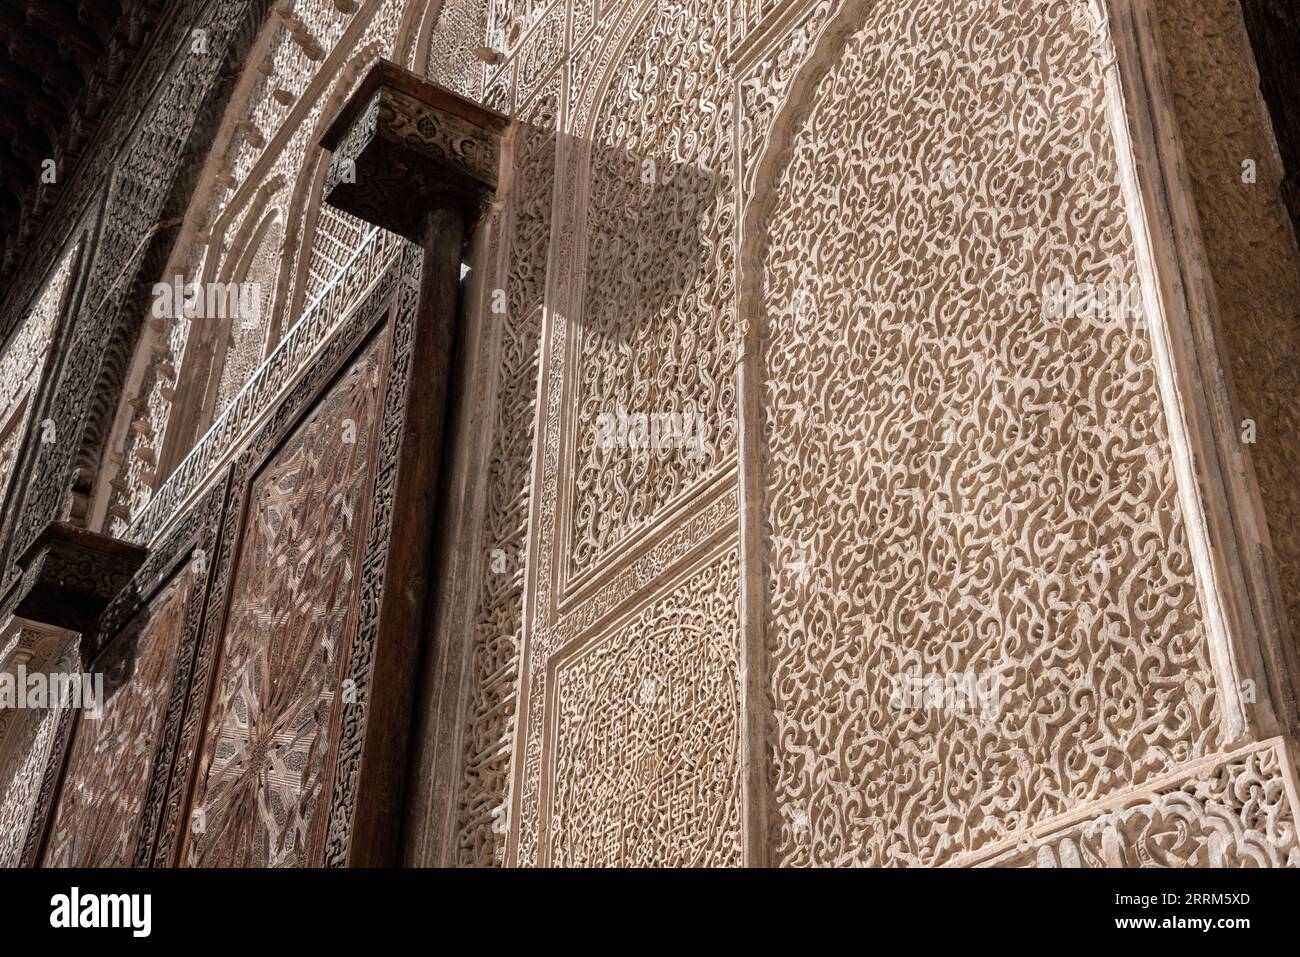 FES, Marocco, tradizionale facciata orientale nel cortile della madrasa Bou Inaniya nella medina di FES, Marocco Foto Stock